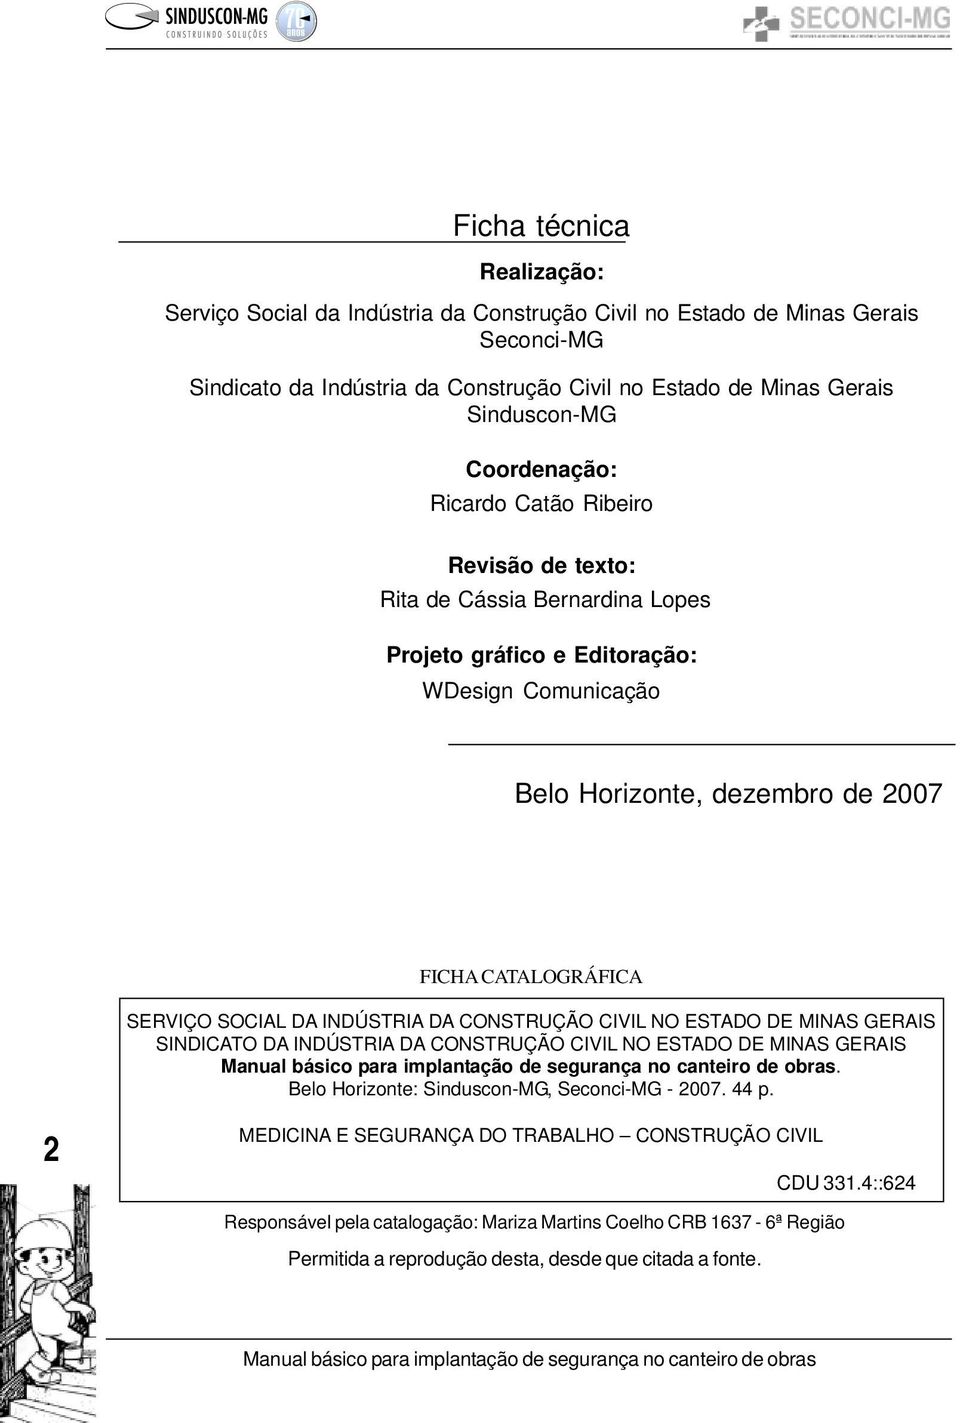 SERVIÇO SOCIAL DA INDÚSTRIA DA CONSTRUÇÃO CIVIL NO ESTADO DE MINAS GERAIS SINDICATO DA INDÚSTRIA DA CONSTRUÇÃO CIVIL NO ESTADO DE MINAS GERAIS. Belo Horizonte: Sinduscon-MG, Seconci-MG - 2007.